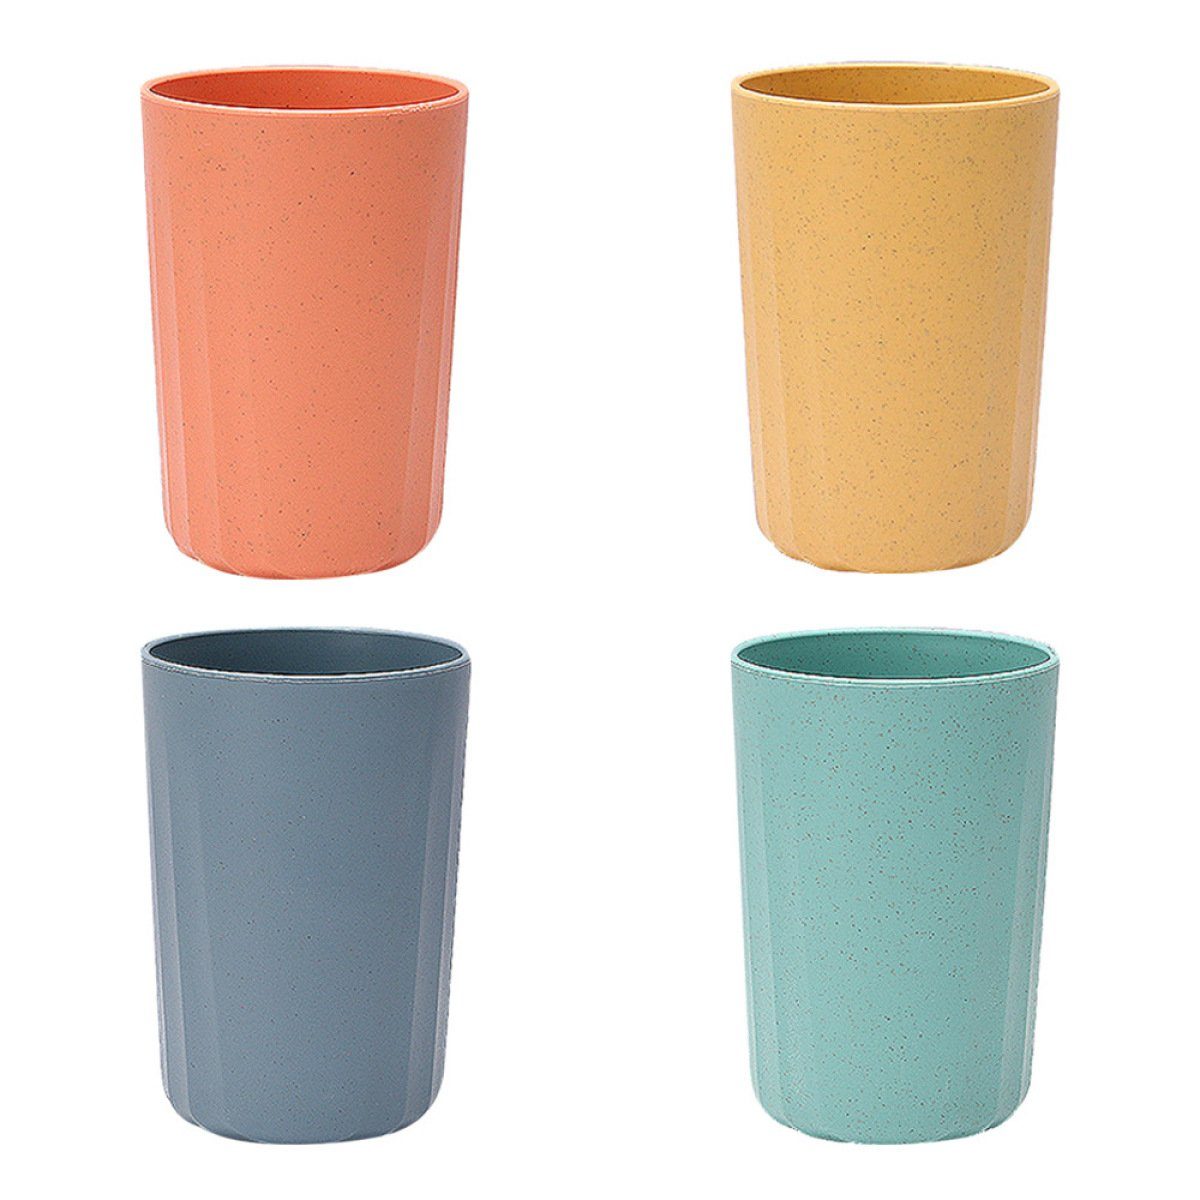 Juoungle Tasse 4 Stück Blau Tassen, Weizen Grün, Orange, wiederverwendbare Kunststoffbecher Strohhalm Gelb